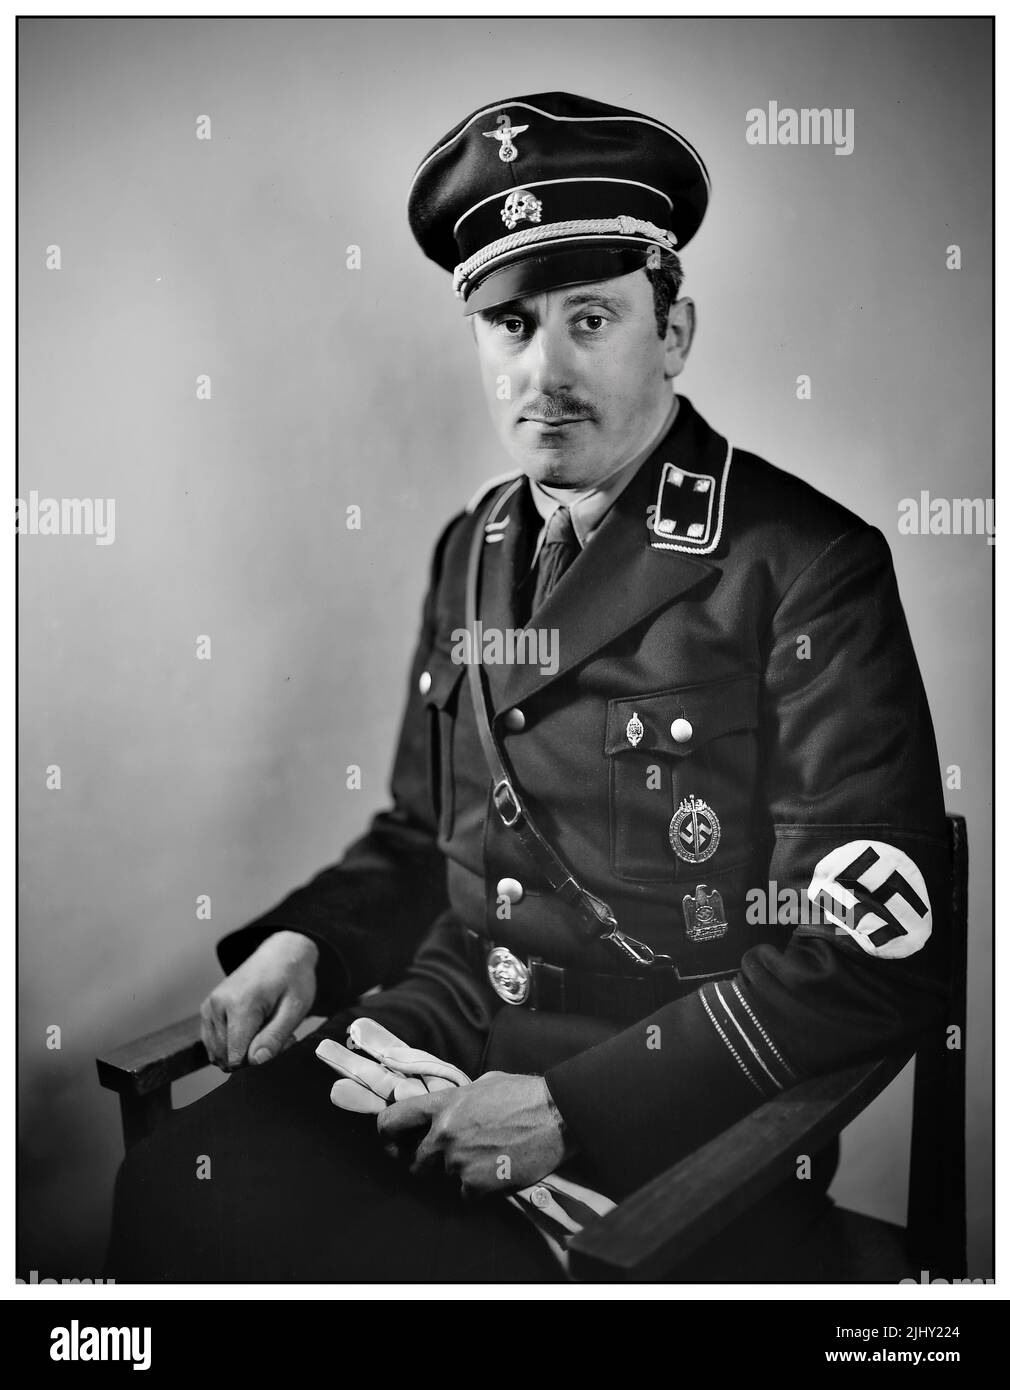 Emil Maurice (19 gennaio 1897 – 6 febbraio 1972) è stato un primo membro del Partito Nazionale Socialista Tedesco dei lavoratori (Partito nazista) e membro fondatore dello Schutzstaffel (SS). Fu il primo autista personale di Hitler, ed era una delle poche persone di origine mista ebraica ed etnica tedesca a servire nelle SS, essendo dichiarato Aryan onorario da Adolf Hitler nel 1935. Foto Stock